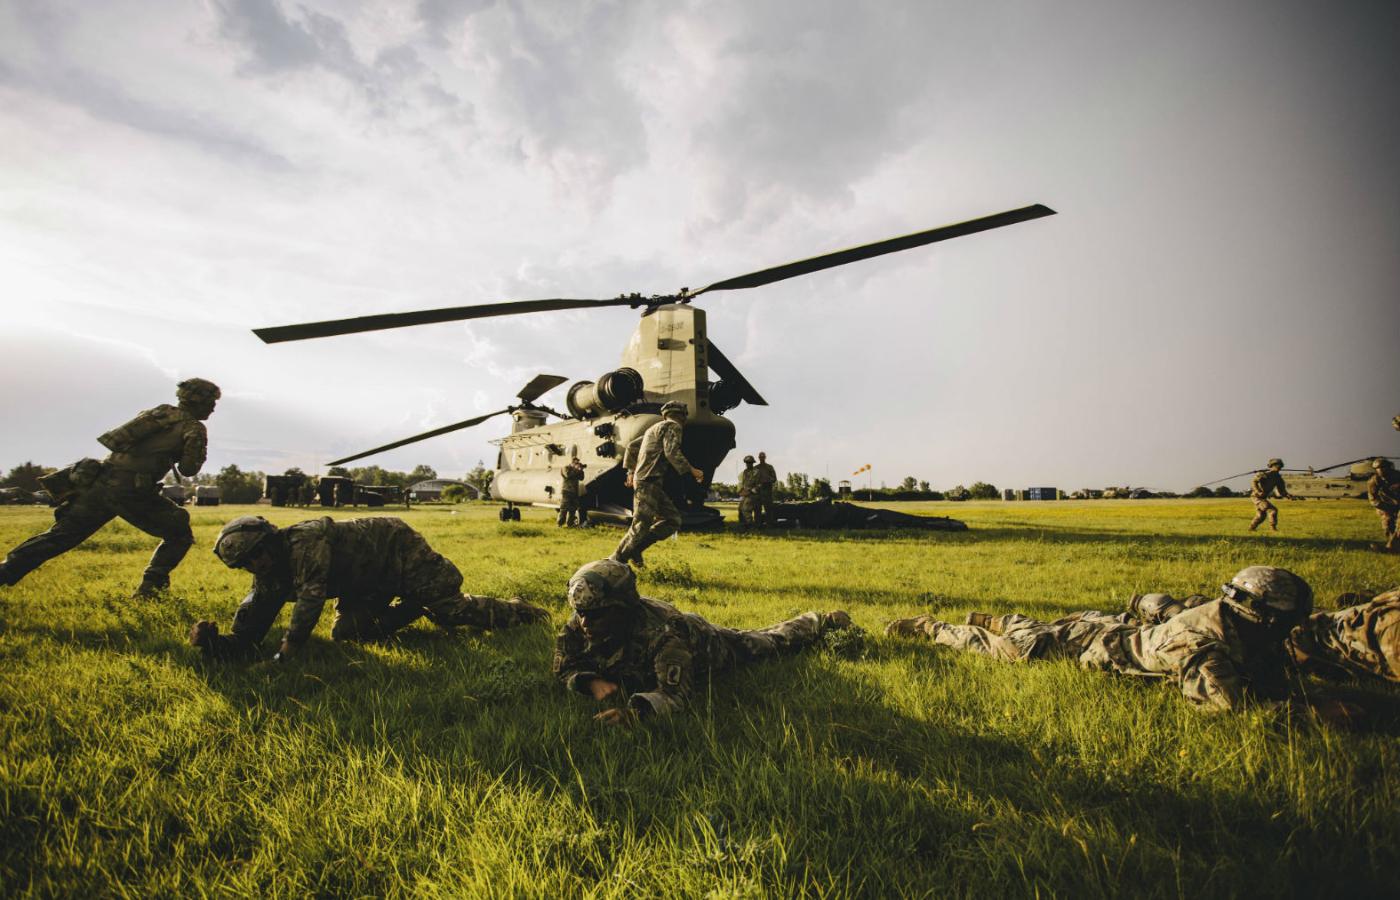 Doroczne ćwiczenie ćwiczenie US Army Europe – Swift Response 19 przeprowadzane w Bułgarii, Chorwacji i Rumunii z udziałem sił zbrojnych z Francji, Niemiec, Włoch, Holandii, Hiszpanii i Wielkiej Brytanii